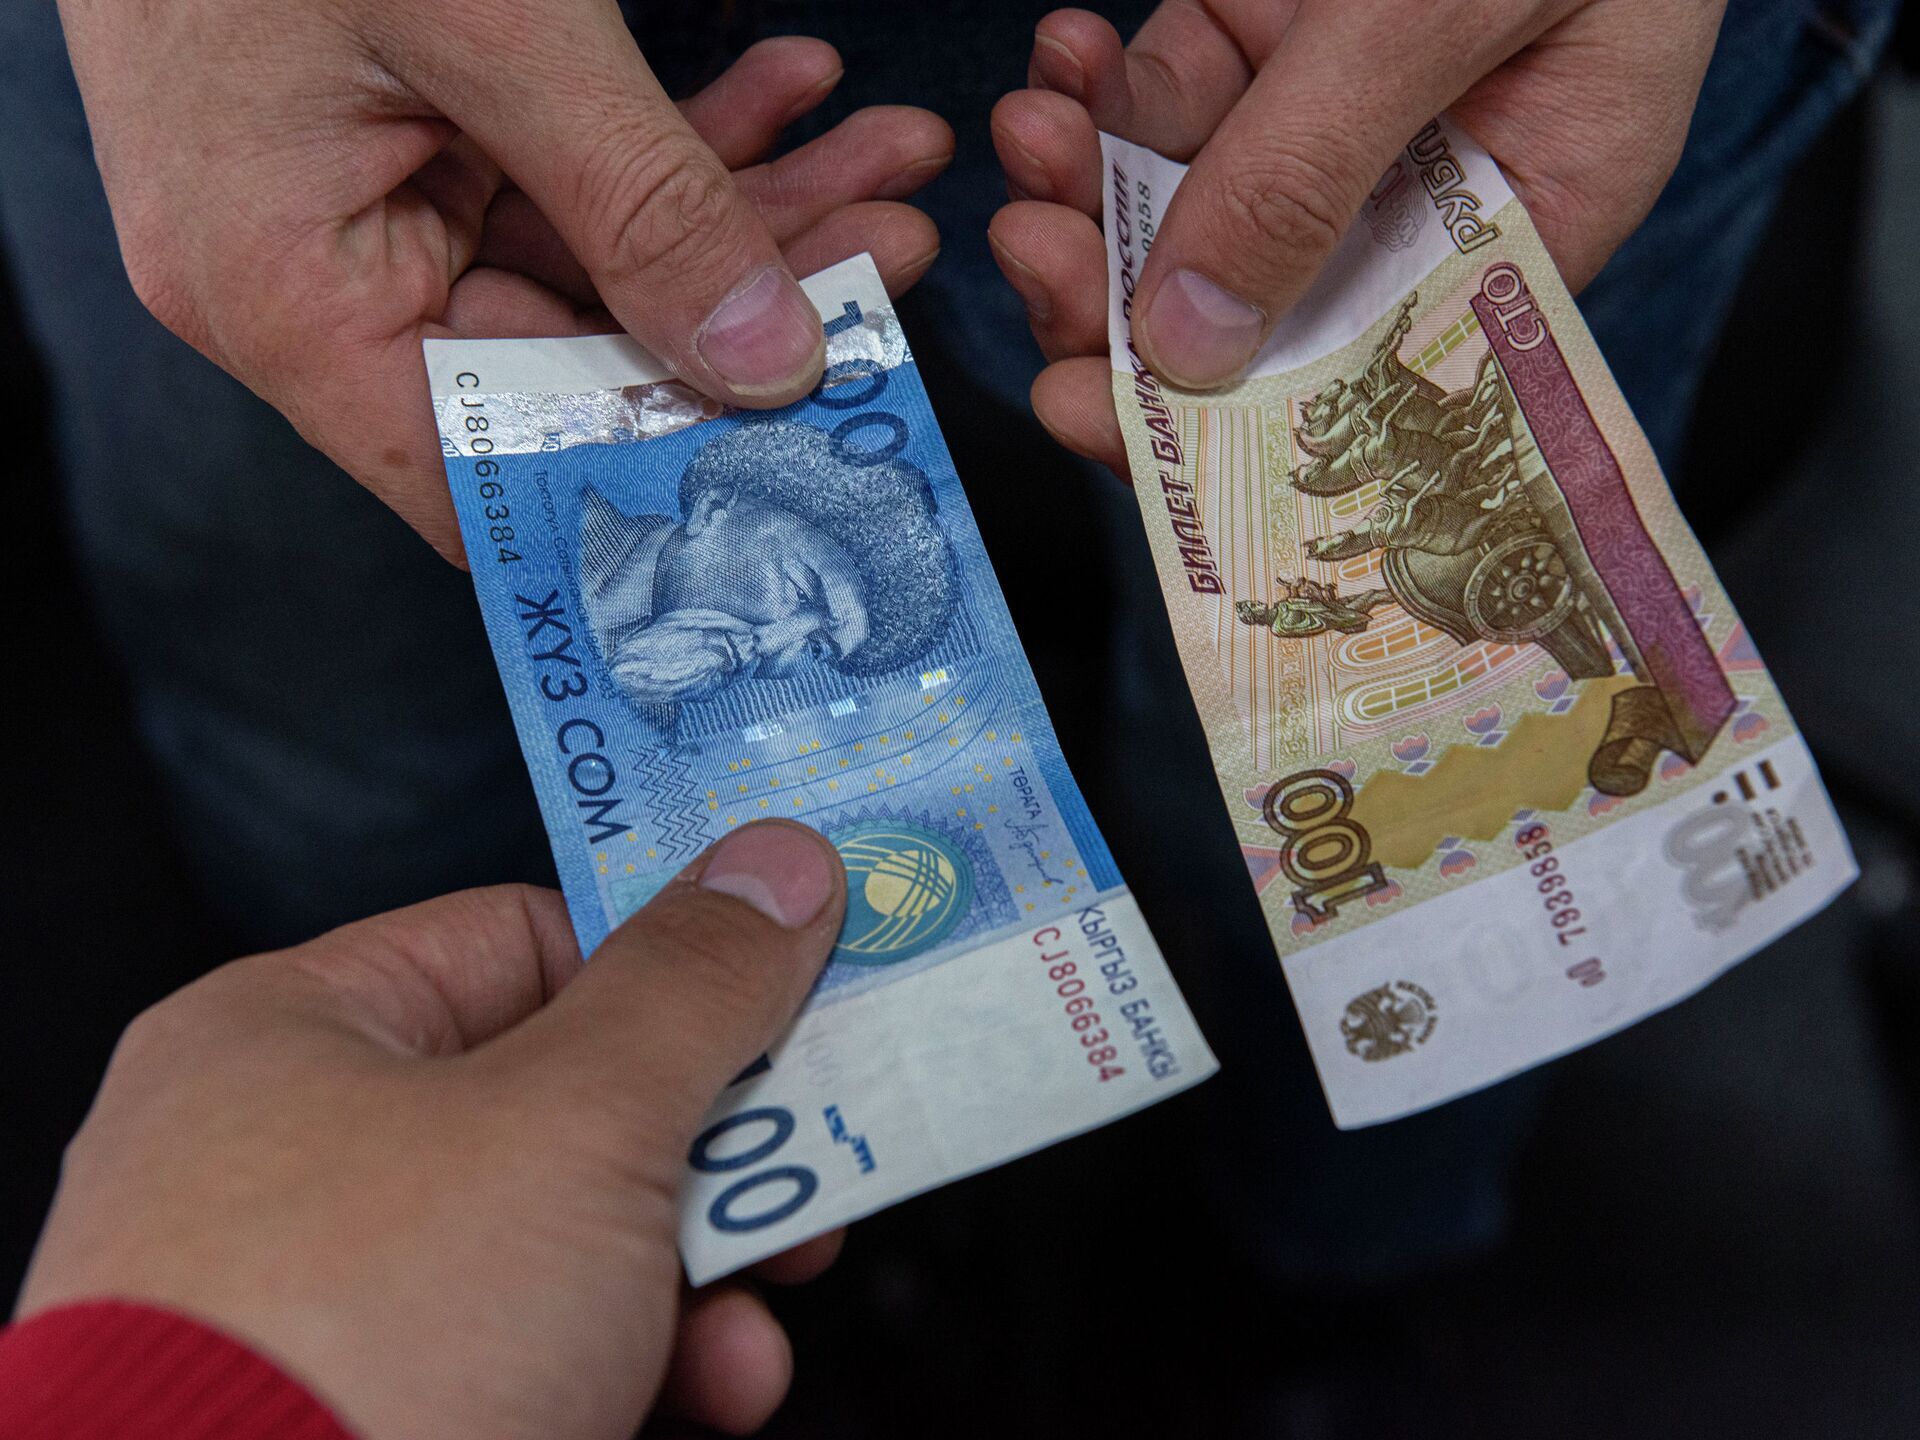 Рубль вернулся к падению, подешевел к сому сразу на 3.63% - официальные курсы валют